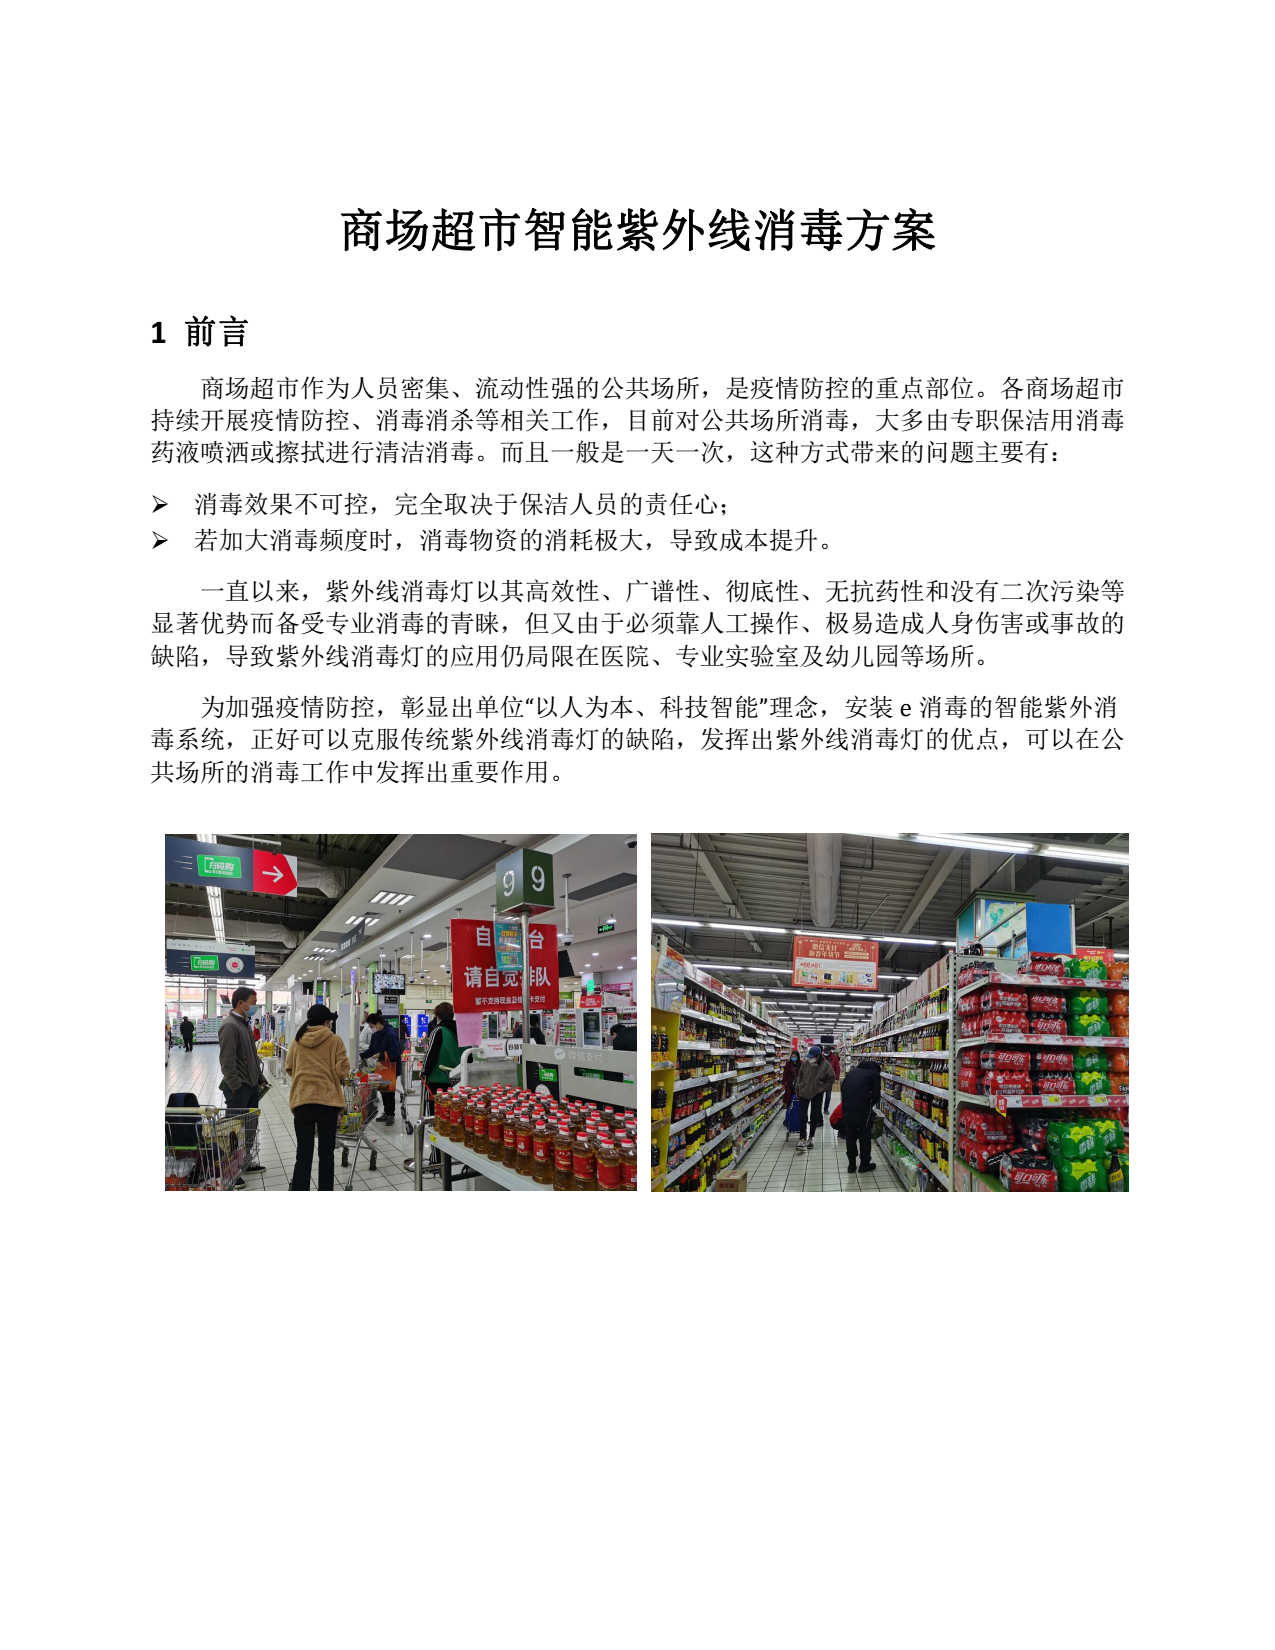 商场超市智能紫外线消毒方案图片